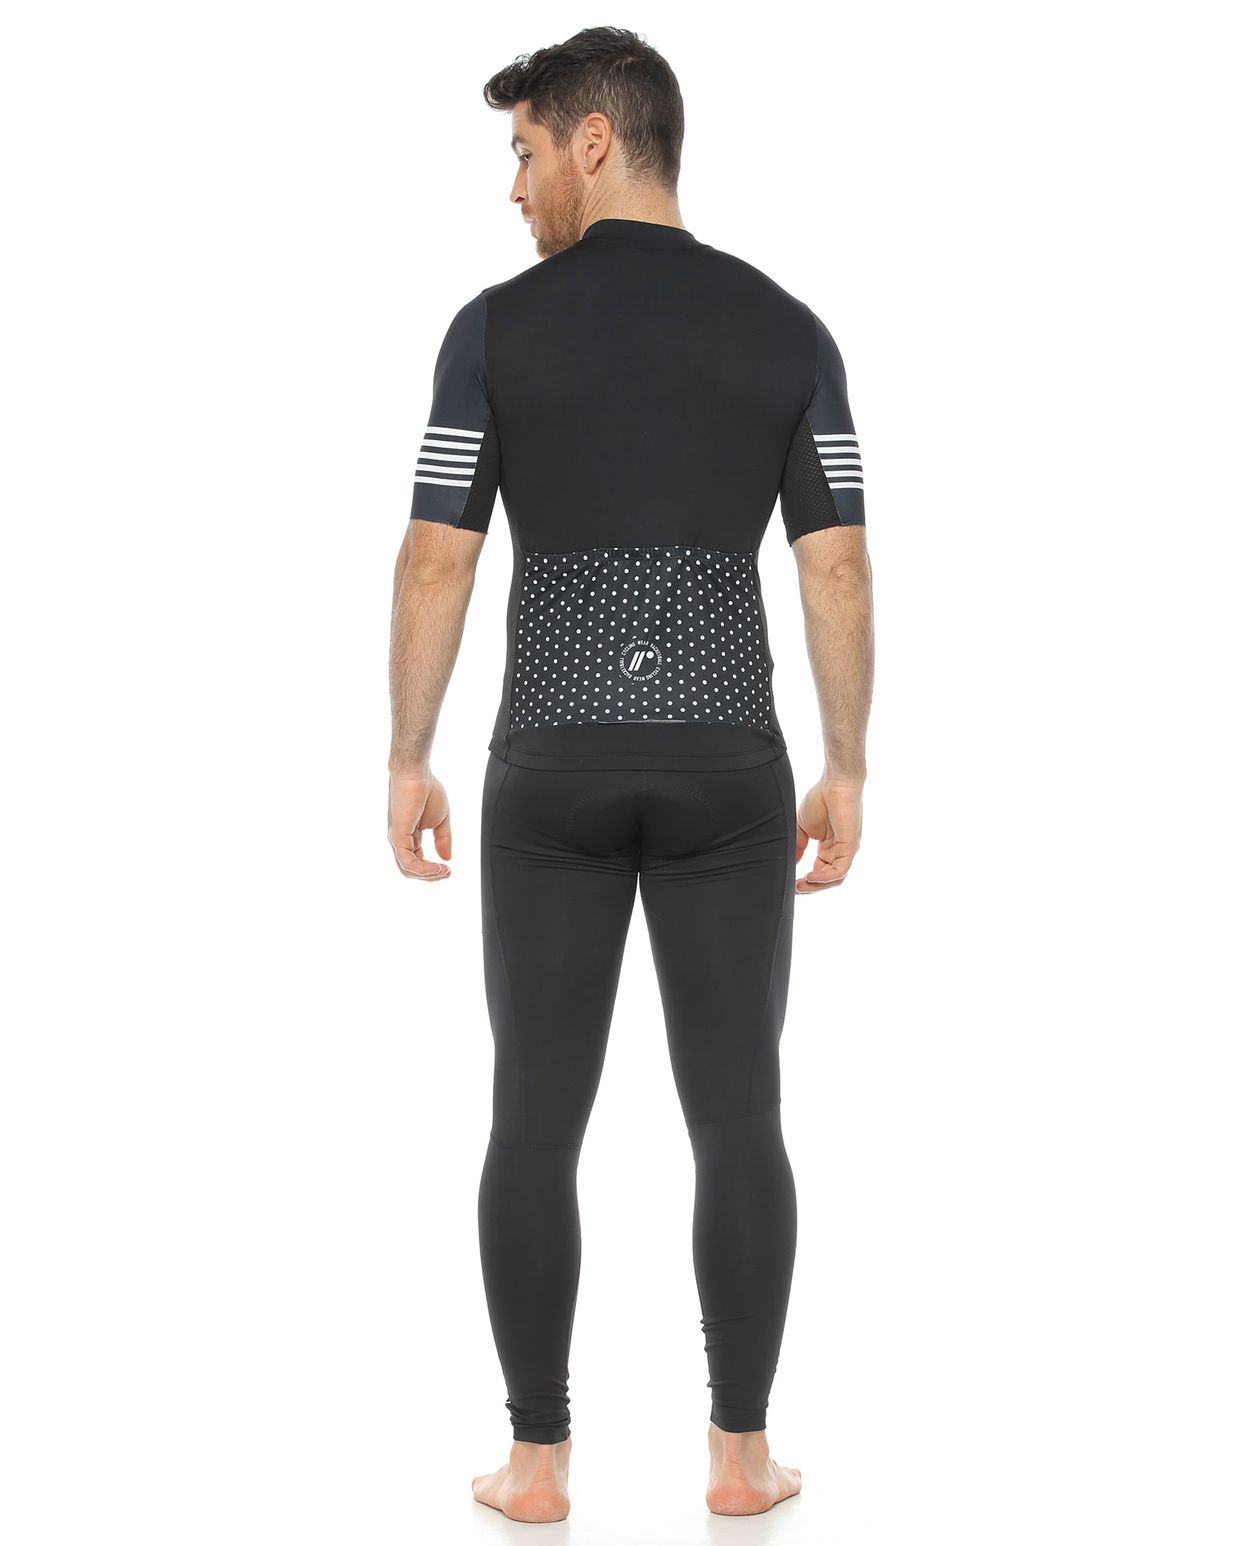 modelo con licra para ciclismo con badana y camiseta de ciclismo unisex color negro  para hombre cuerpo completo parte trasera